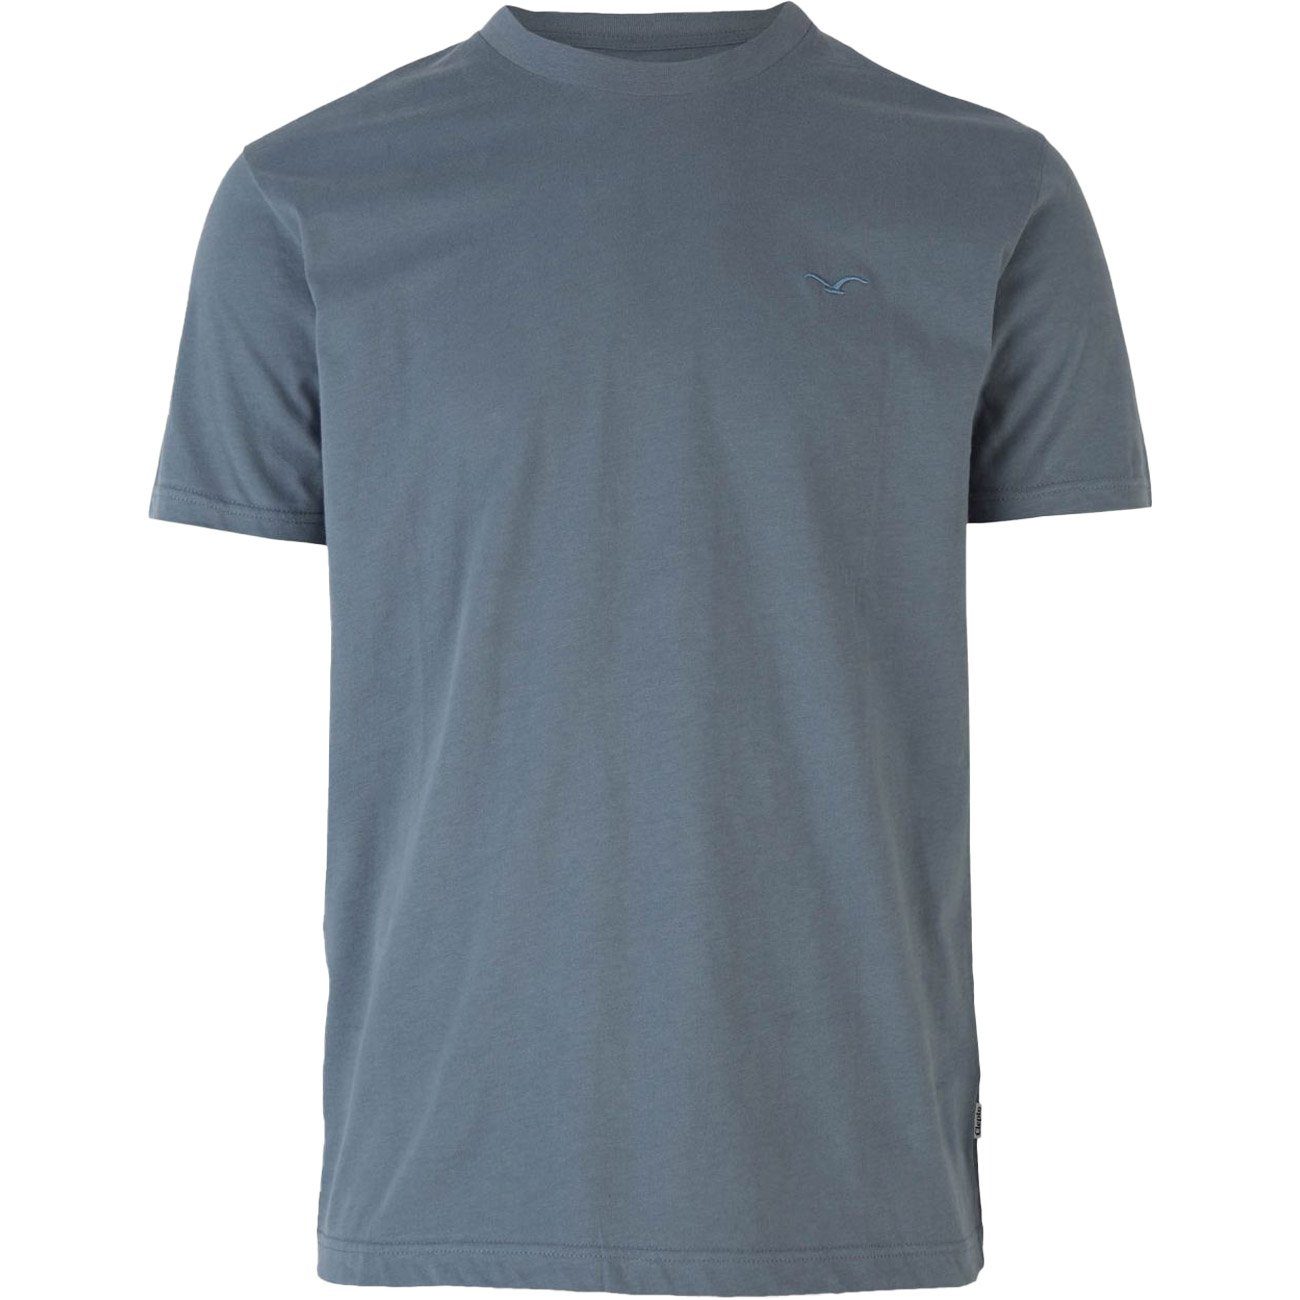 den besten Service bieten Cleptomanicx T-Shirt Ligull Regular graphite blue